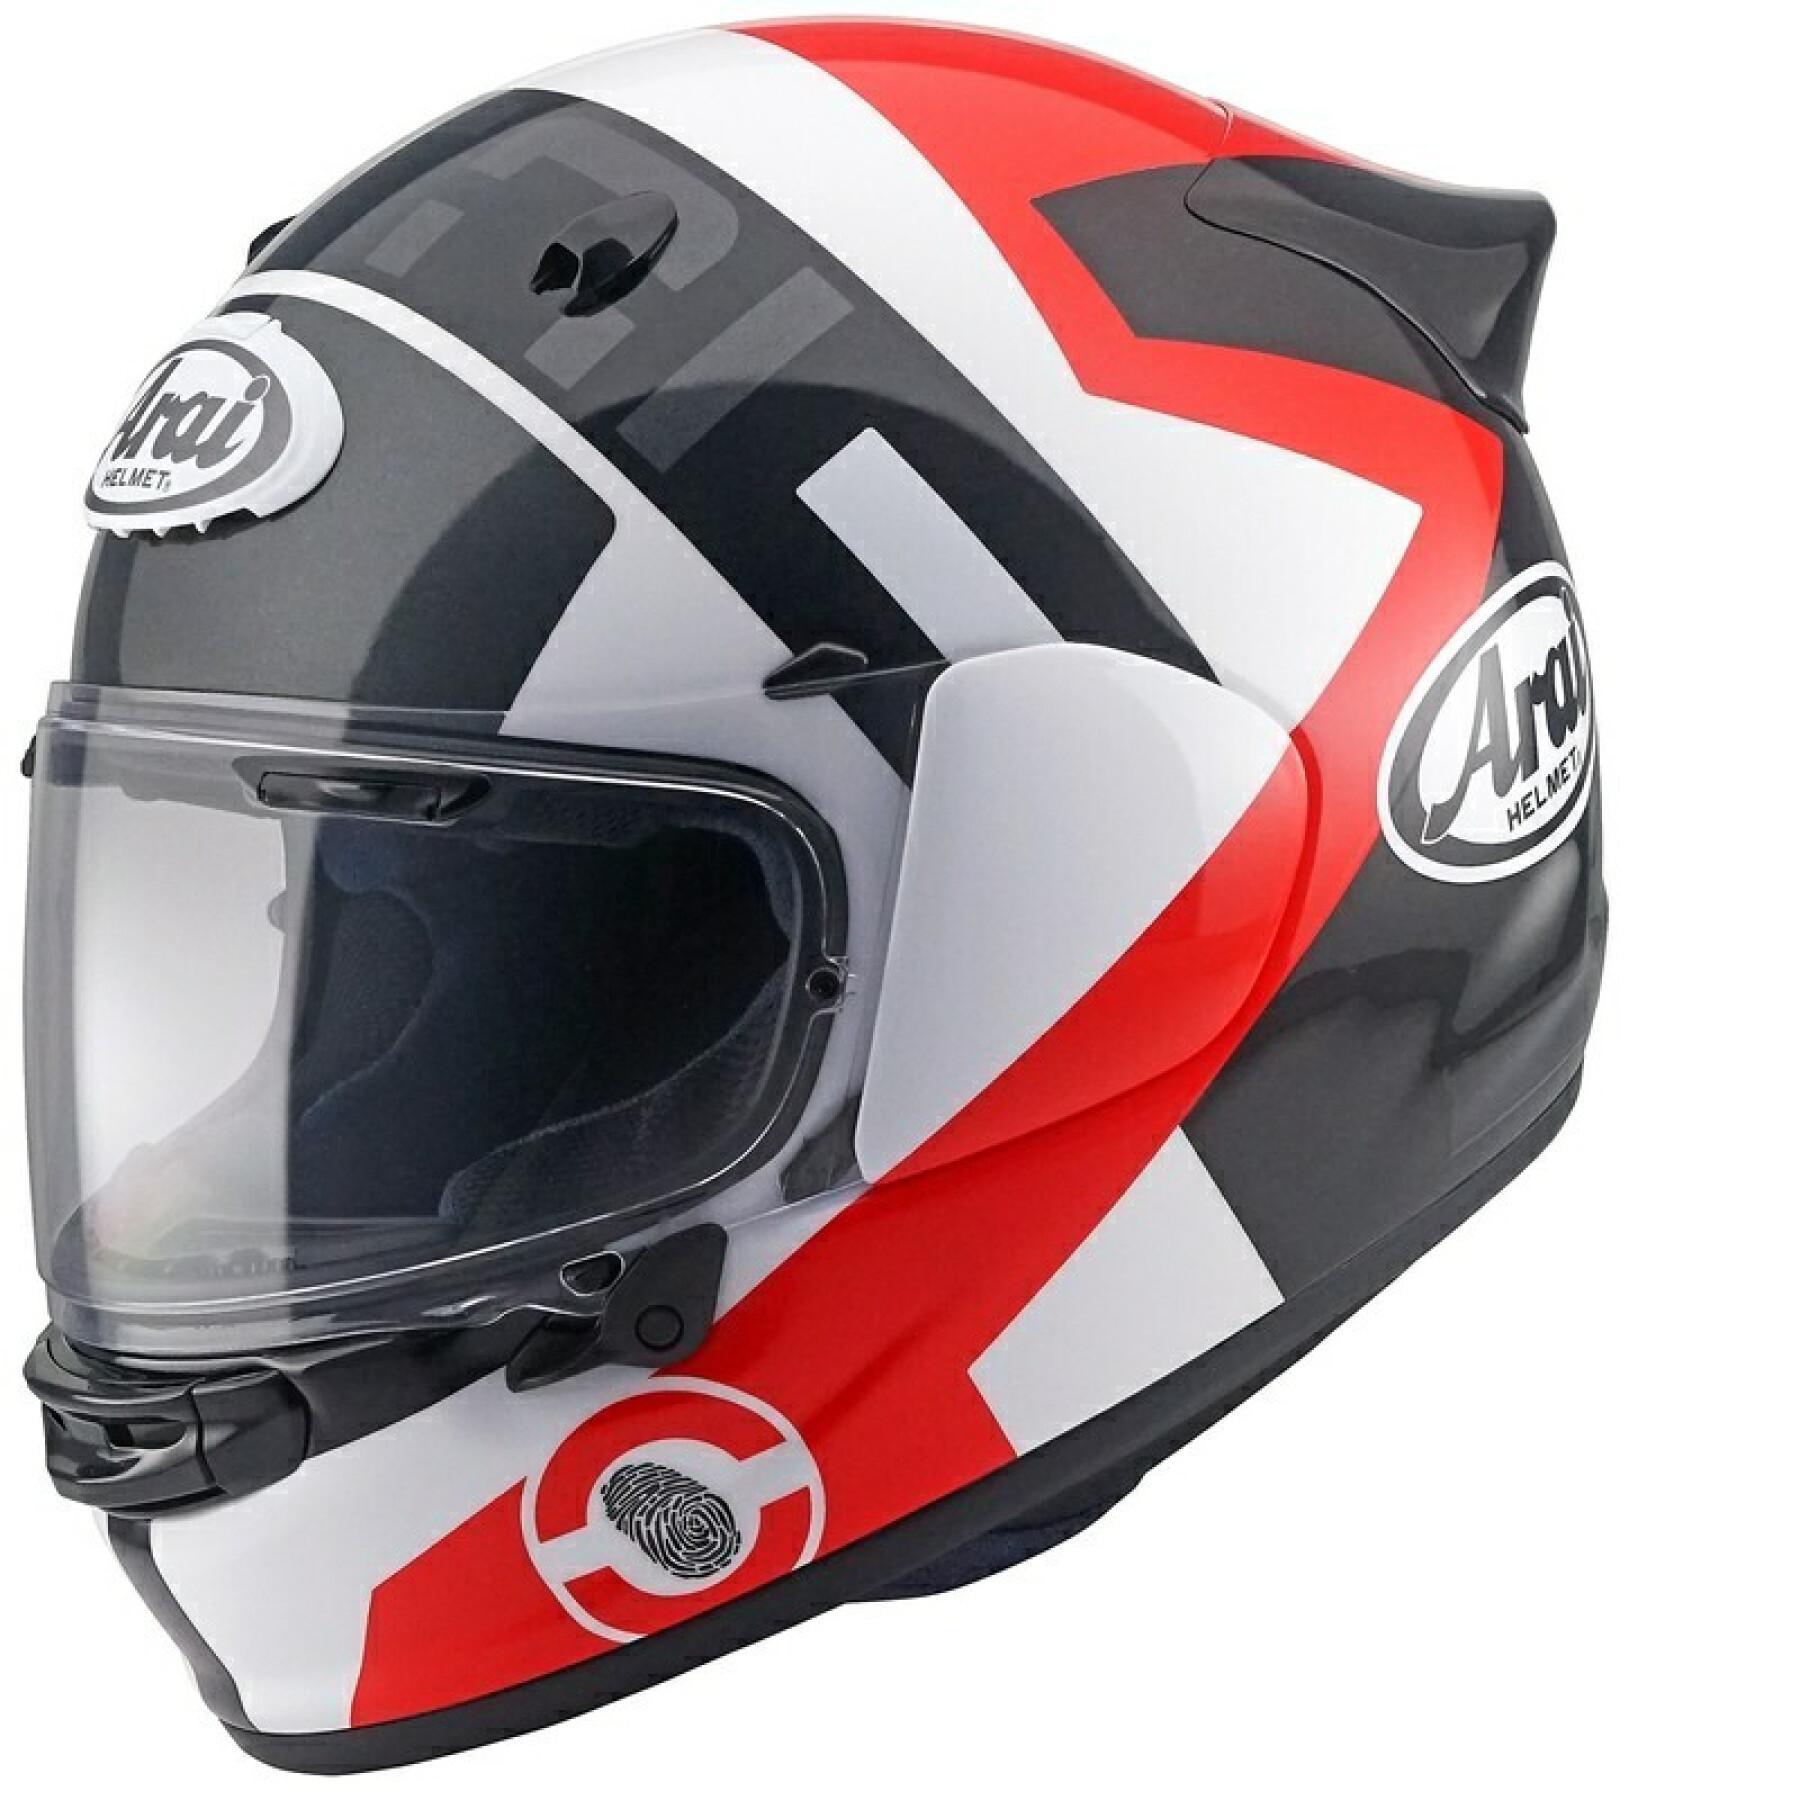 Full face motorcycle helmet Arai Quantic Space